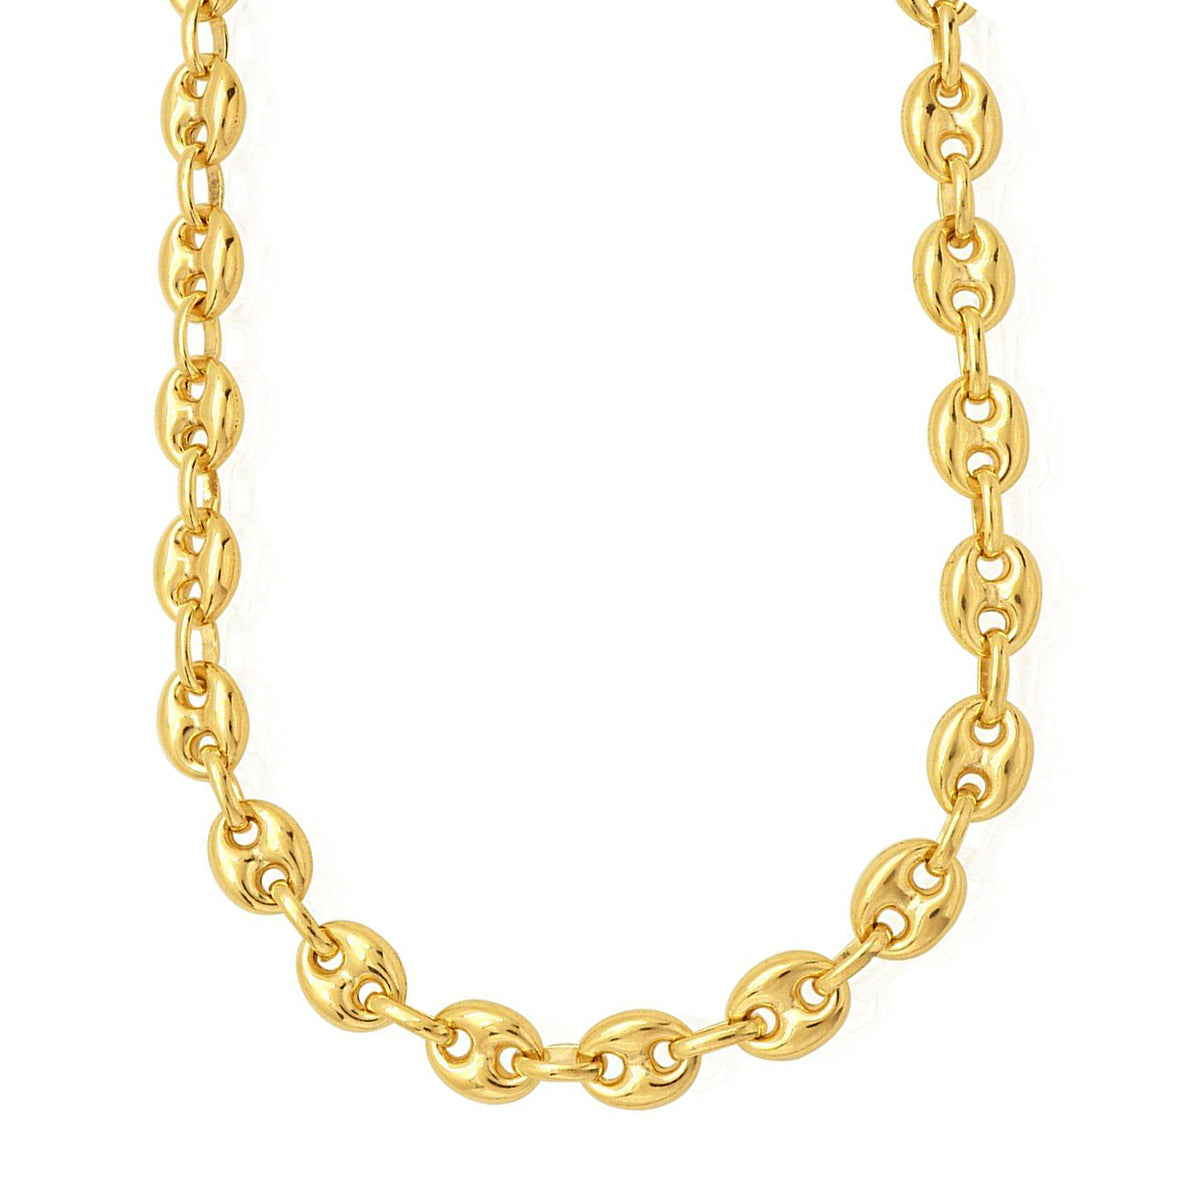 Collana a catena a maglie Mariner soffiata in oro giallo 14k, gioielli di alta moda da 7 mm per uomini e donne